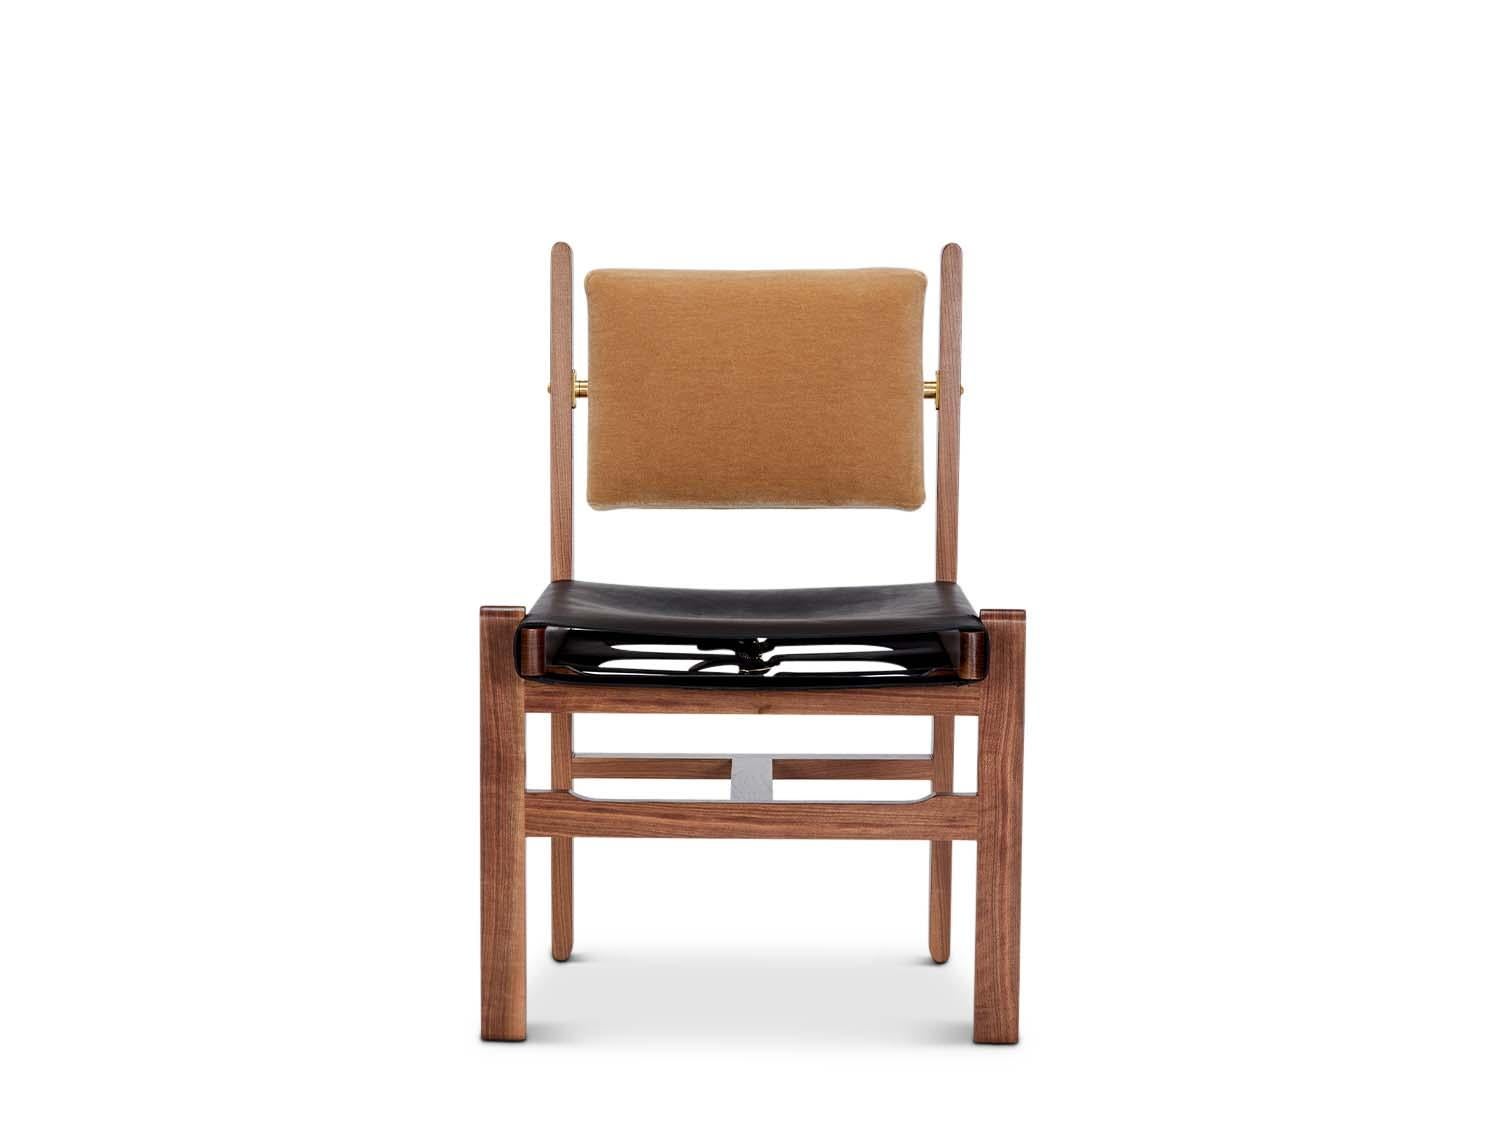 La chaise d'appoint Morro Dining est fabriquée à partir d'un cadre en noyer américain ou en chêne blanc massif et comporte un coussin de dossier rembourré et une assise en cuir en bandoulière.

La collection Lawson-Fenning est conçue et fabriquée à